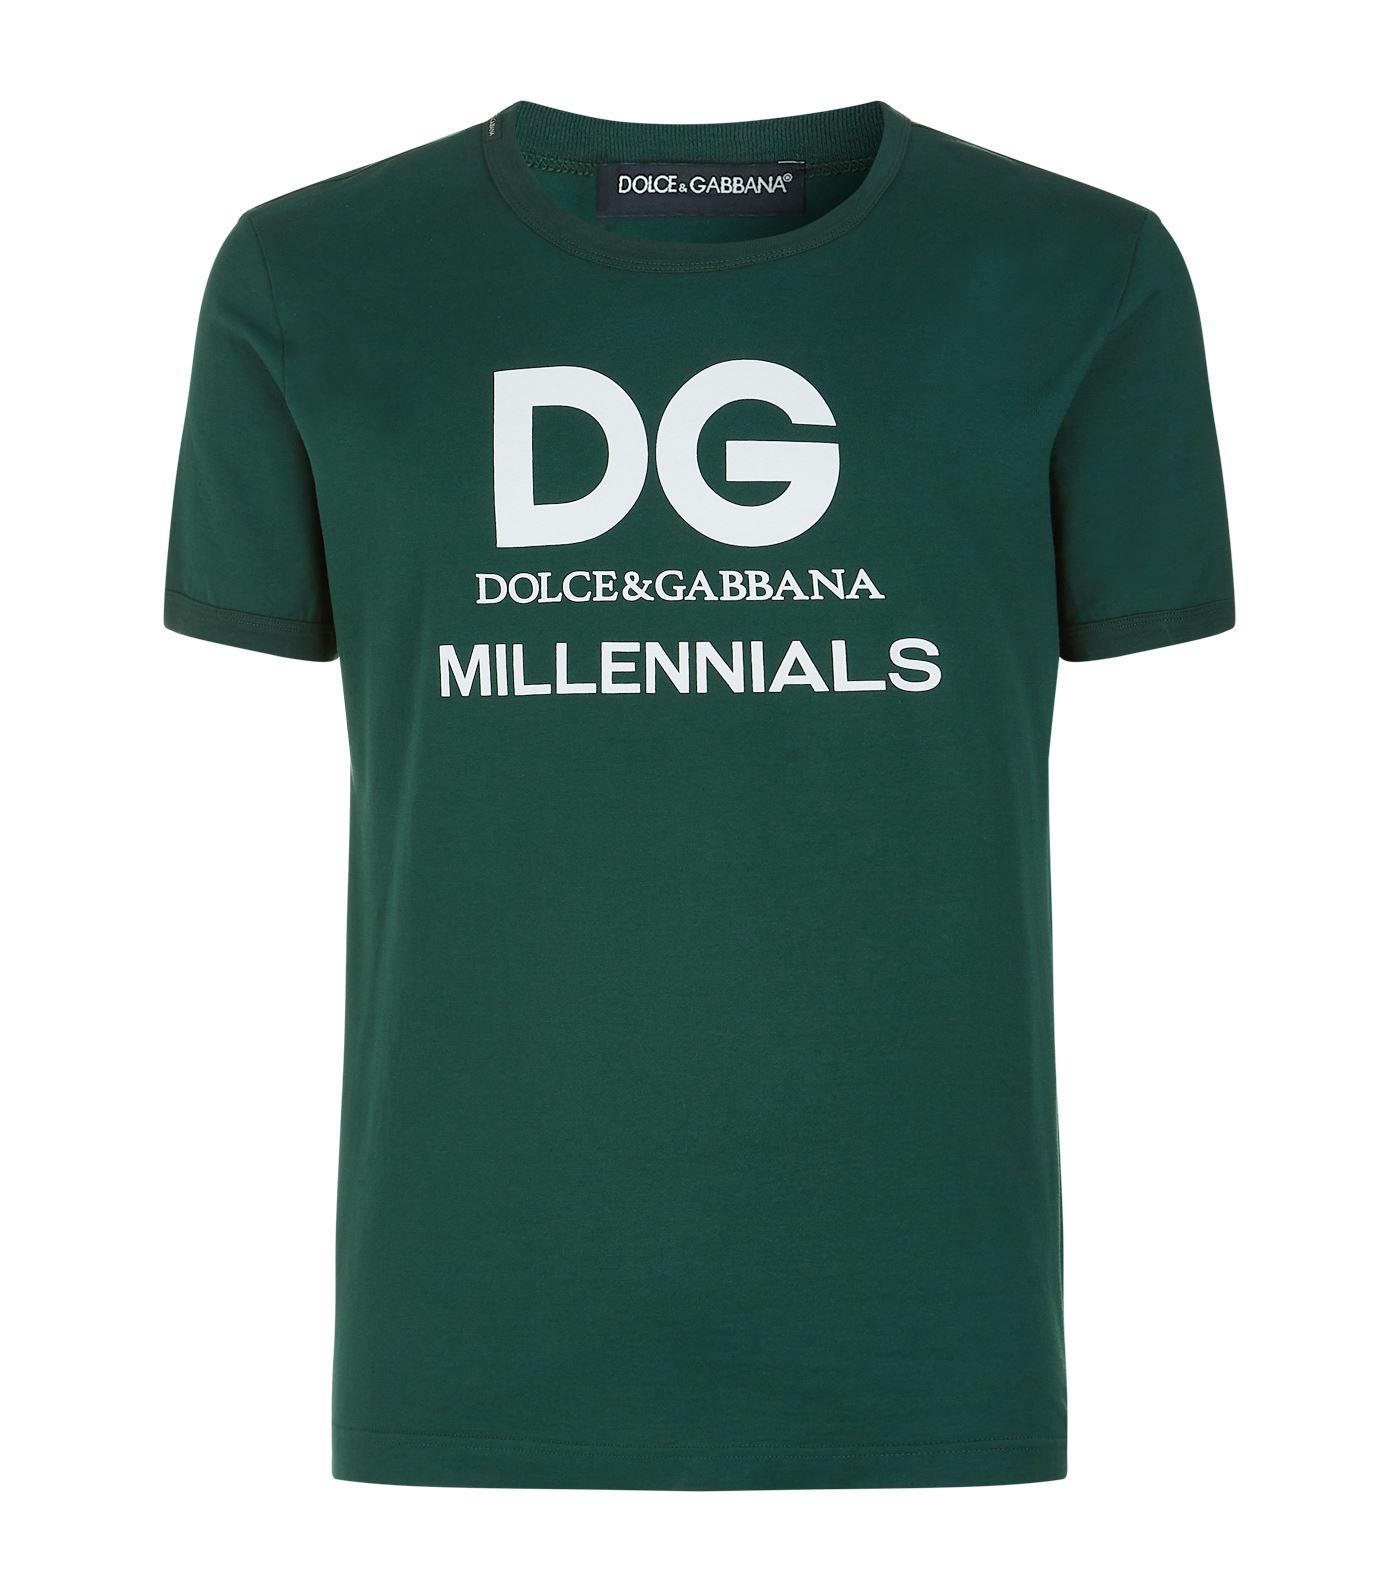 Dolce & Gabbana Dg Millennials T-shirt in Green for Men | Lyst